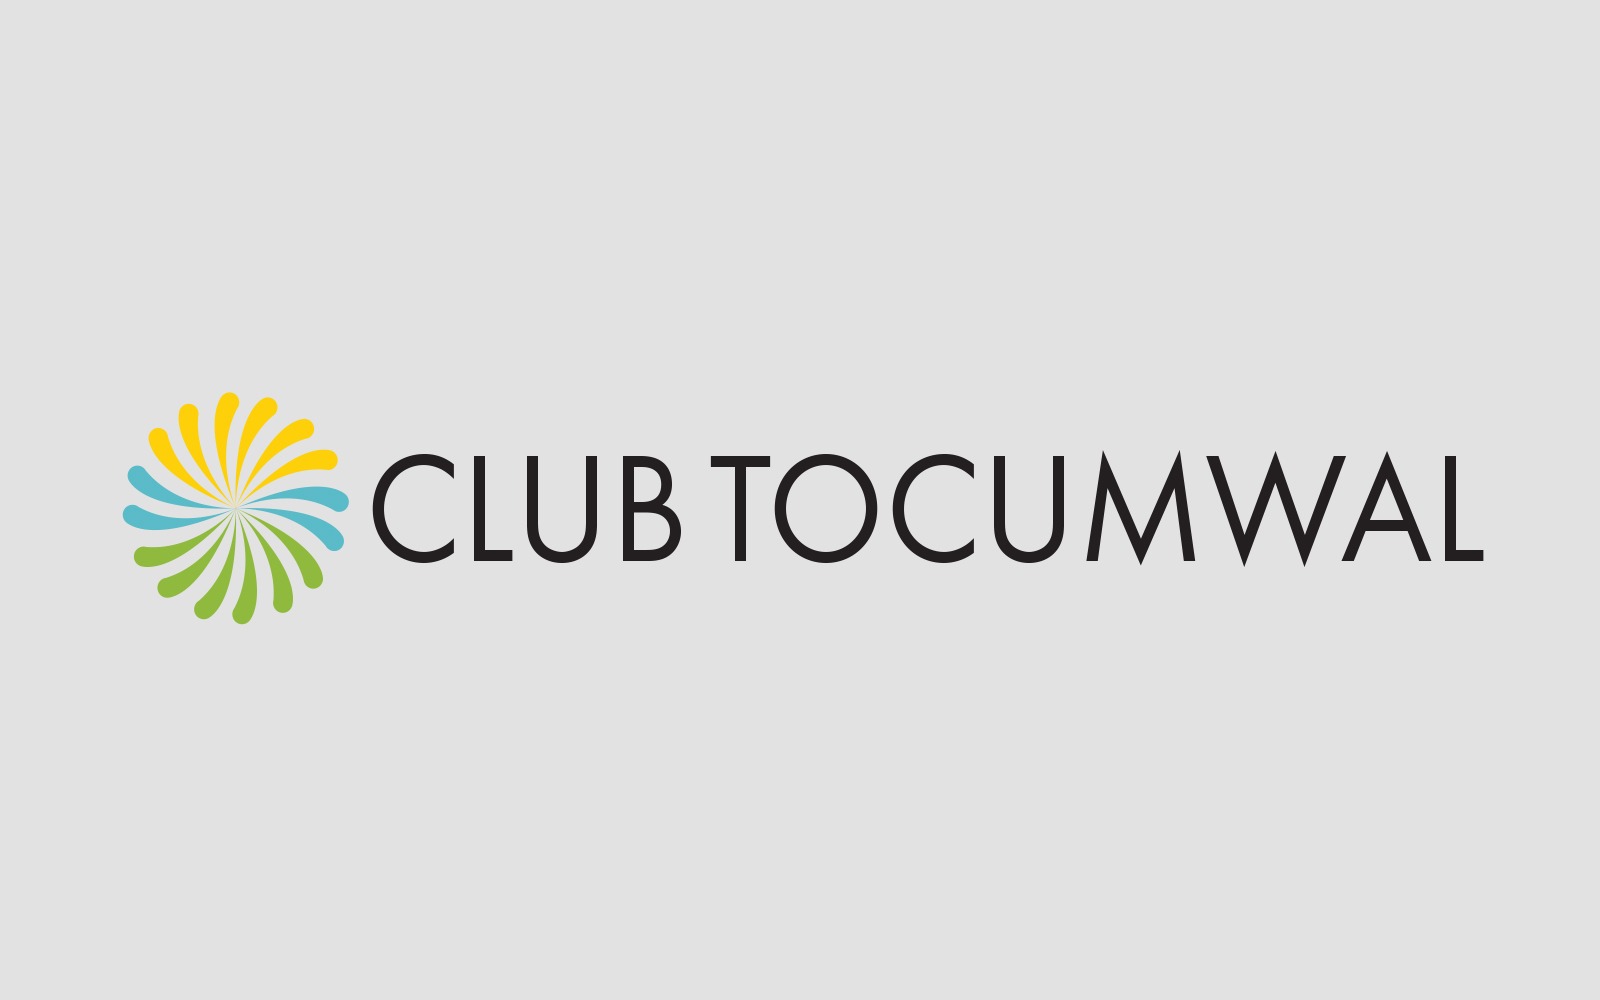 Club Tocumwal